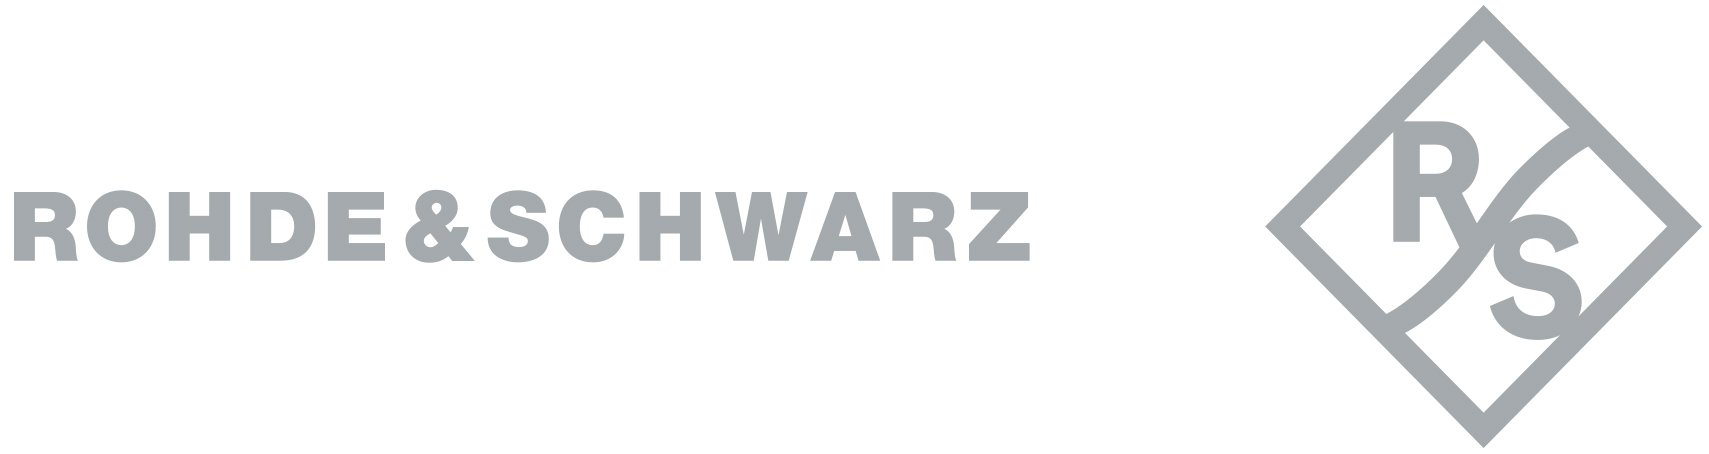 ROHDE & SCHWARZ GmbH & Co. KG- Partner